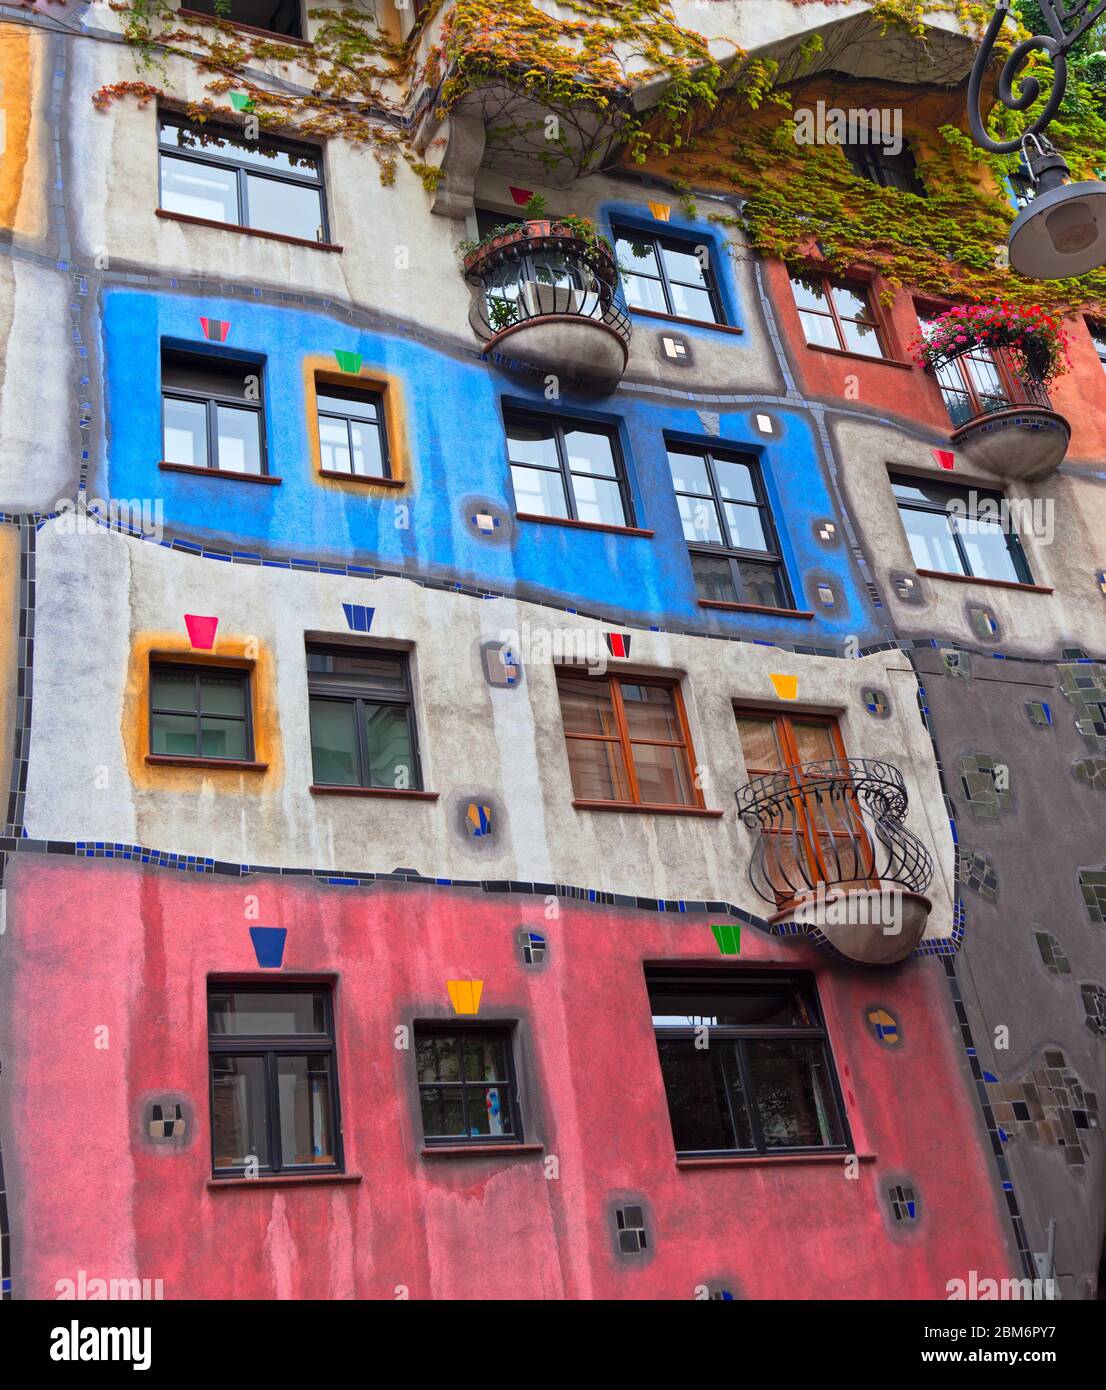 Hundertwasser House (Hundertwasserhaus) - une maison à Vienne, Autriche. Conçu par l'artiste et architecte autrichien Friedensreich Hundertwasser Banque D'Images